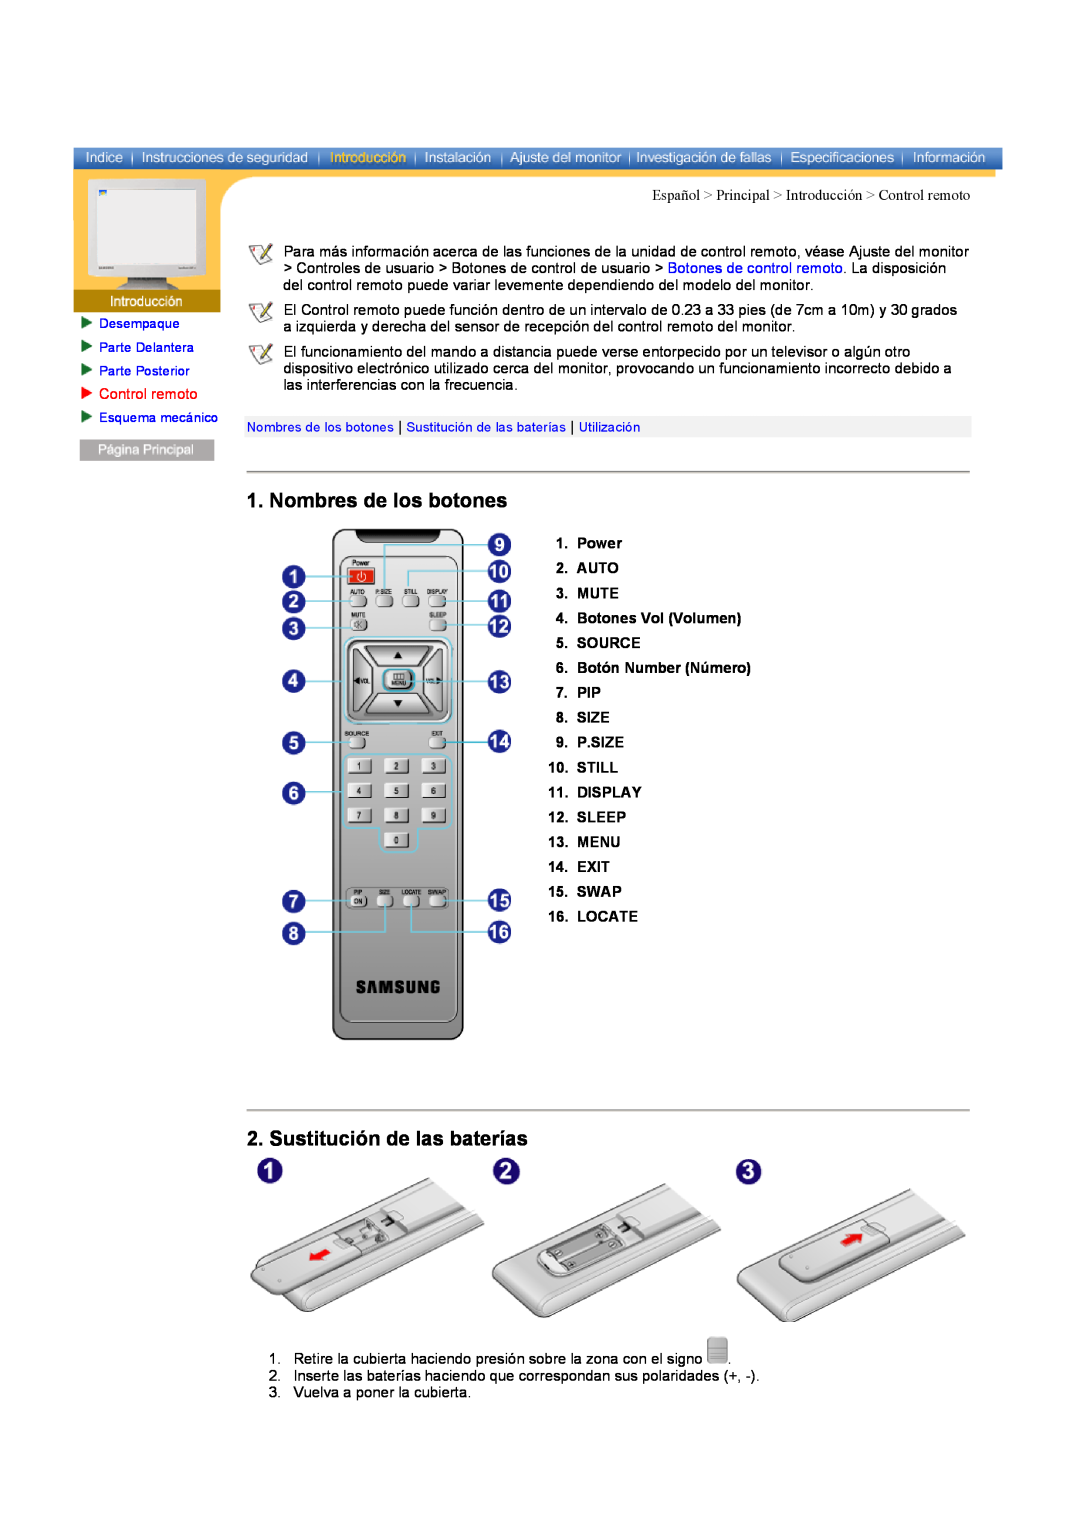 Samsung CK40PSNS/EDC, CK40BSNS/EDC manual Nombres de los botones, Sustitución de las baterías, Control remoto 